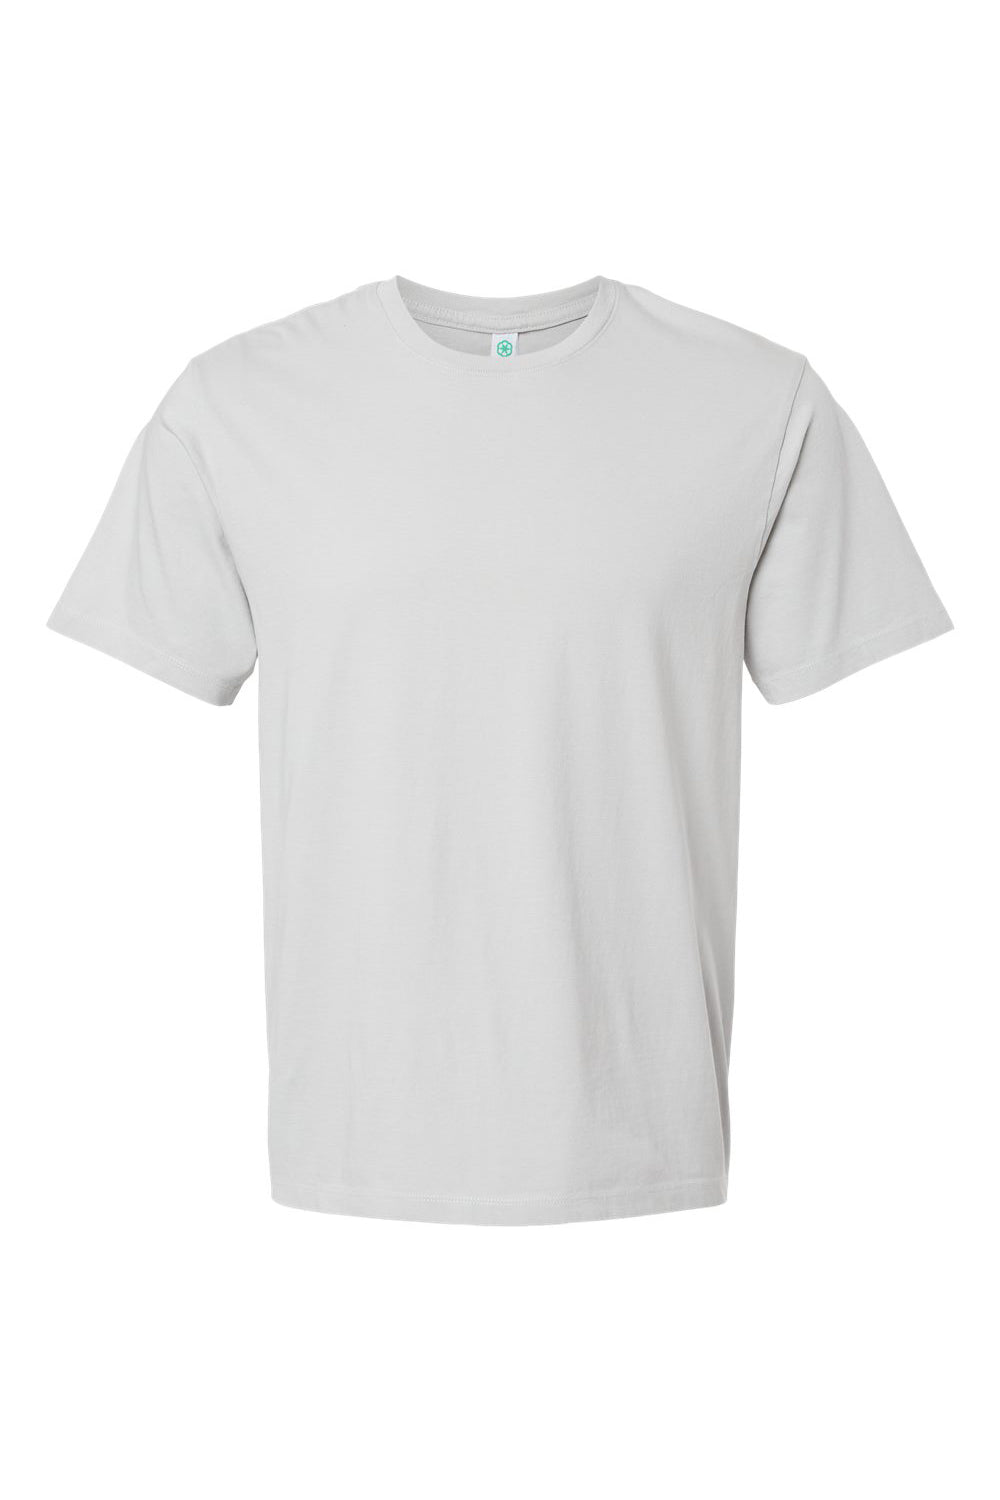 SoftShirts 400 Mens Organic Short Sleeve Crewneck T-Shirt Silver Grey Flat Front